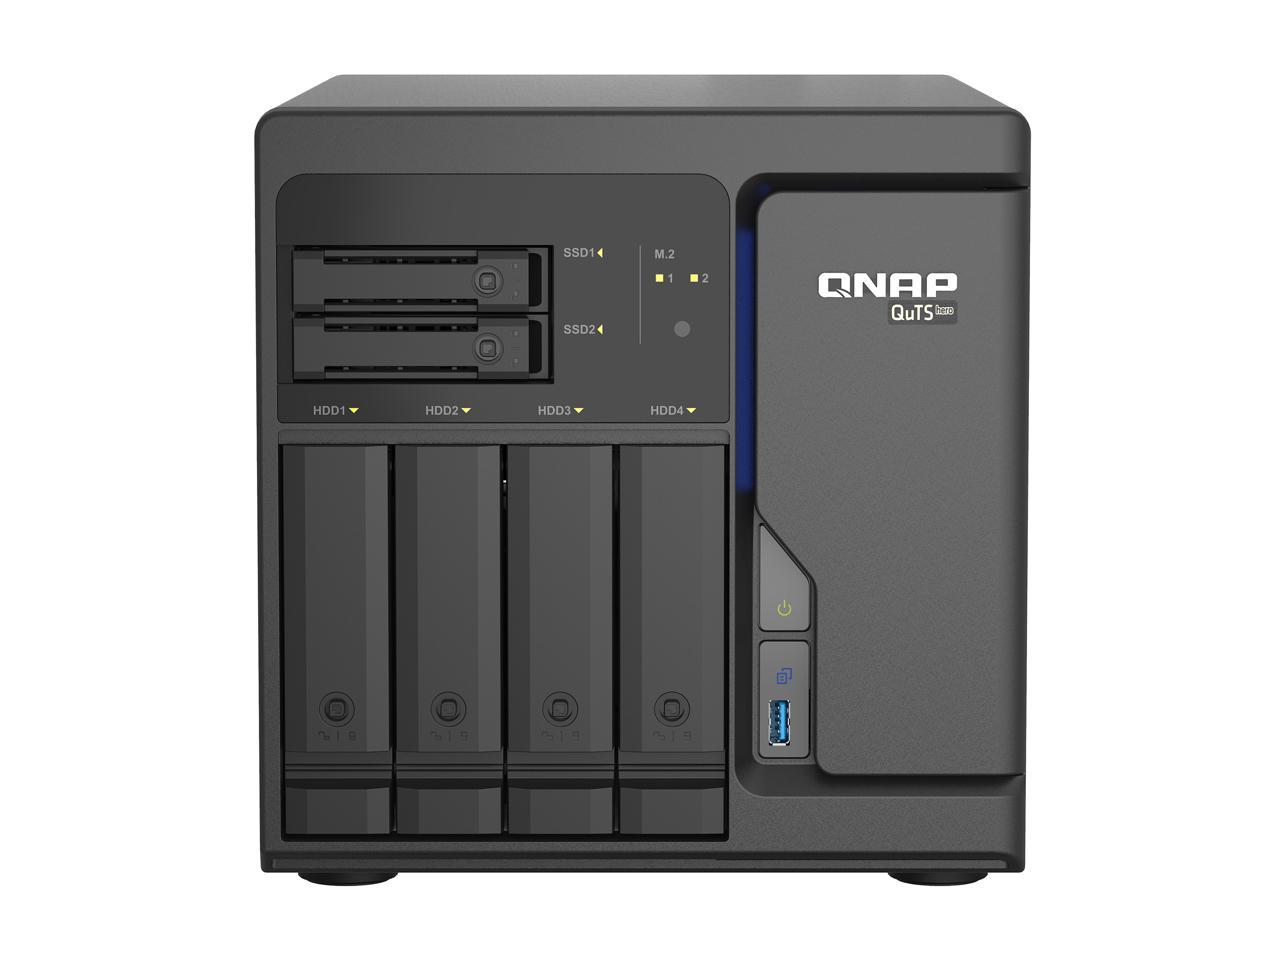 QNAP 6-Bay QuTS hero NAS, Xeon D-1602 2.5GHz, 8GB ECC RAM, 4 x 2.5GbE, PCIe expansion slot x2, built-in M.2 NVMe Gen3 x4 port x2 TS-h686-D1602-8G